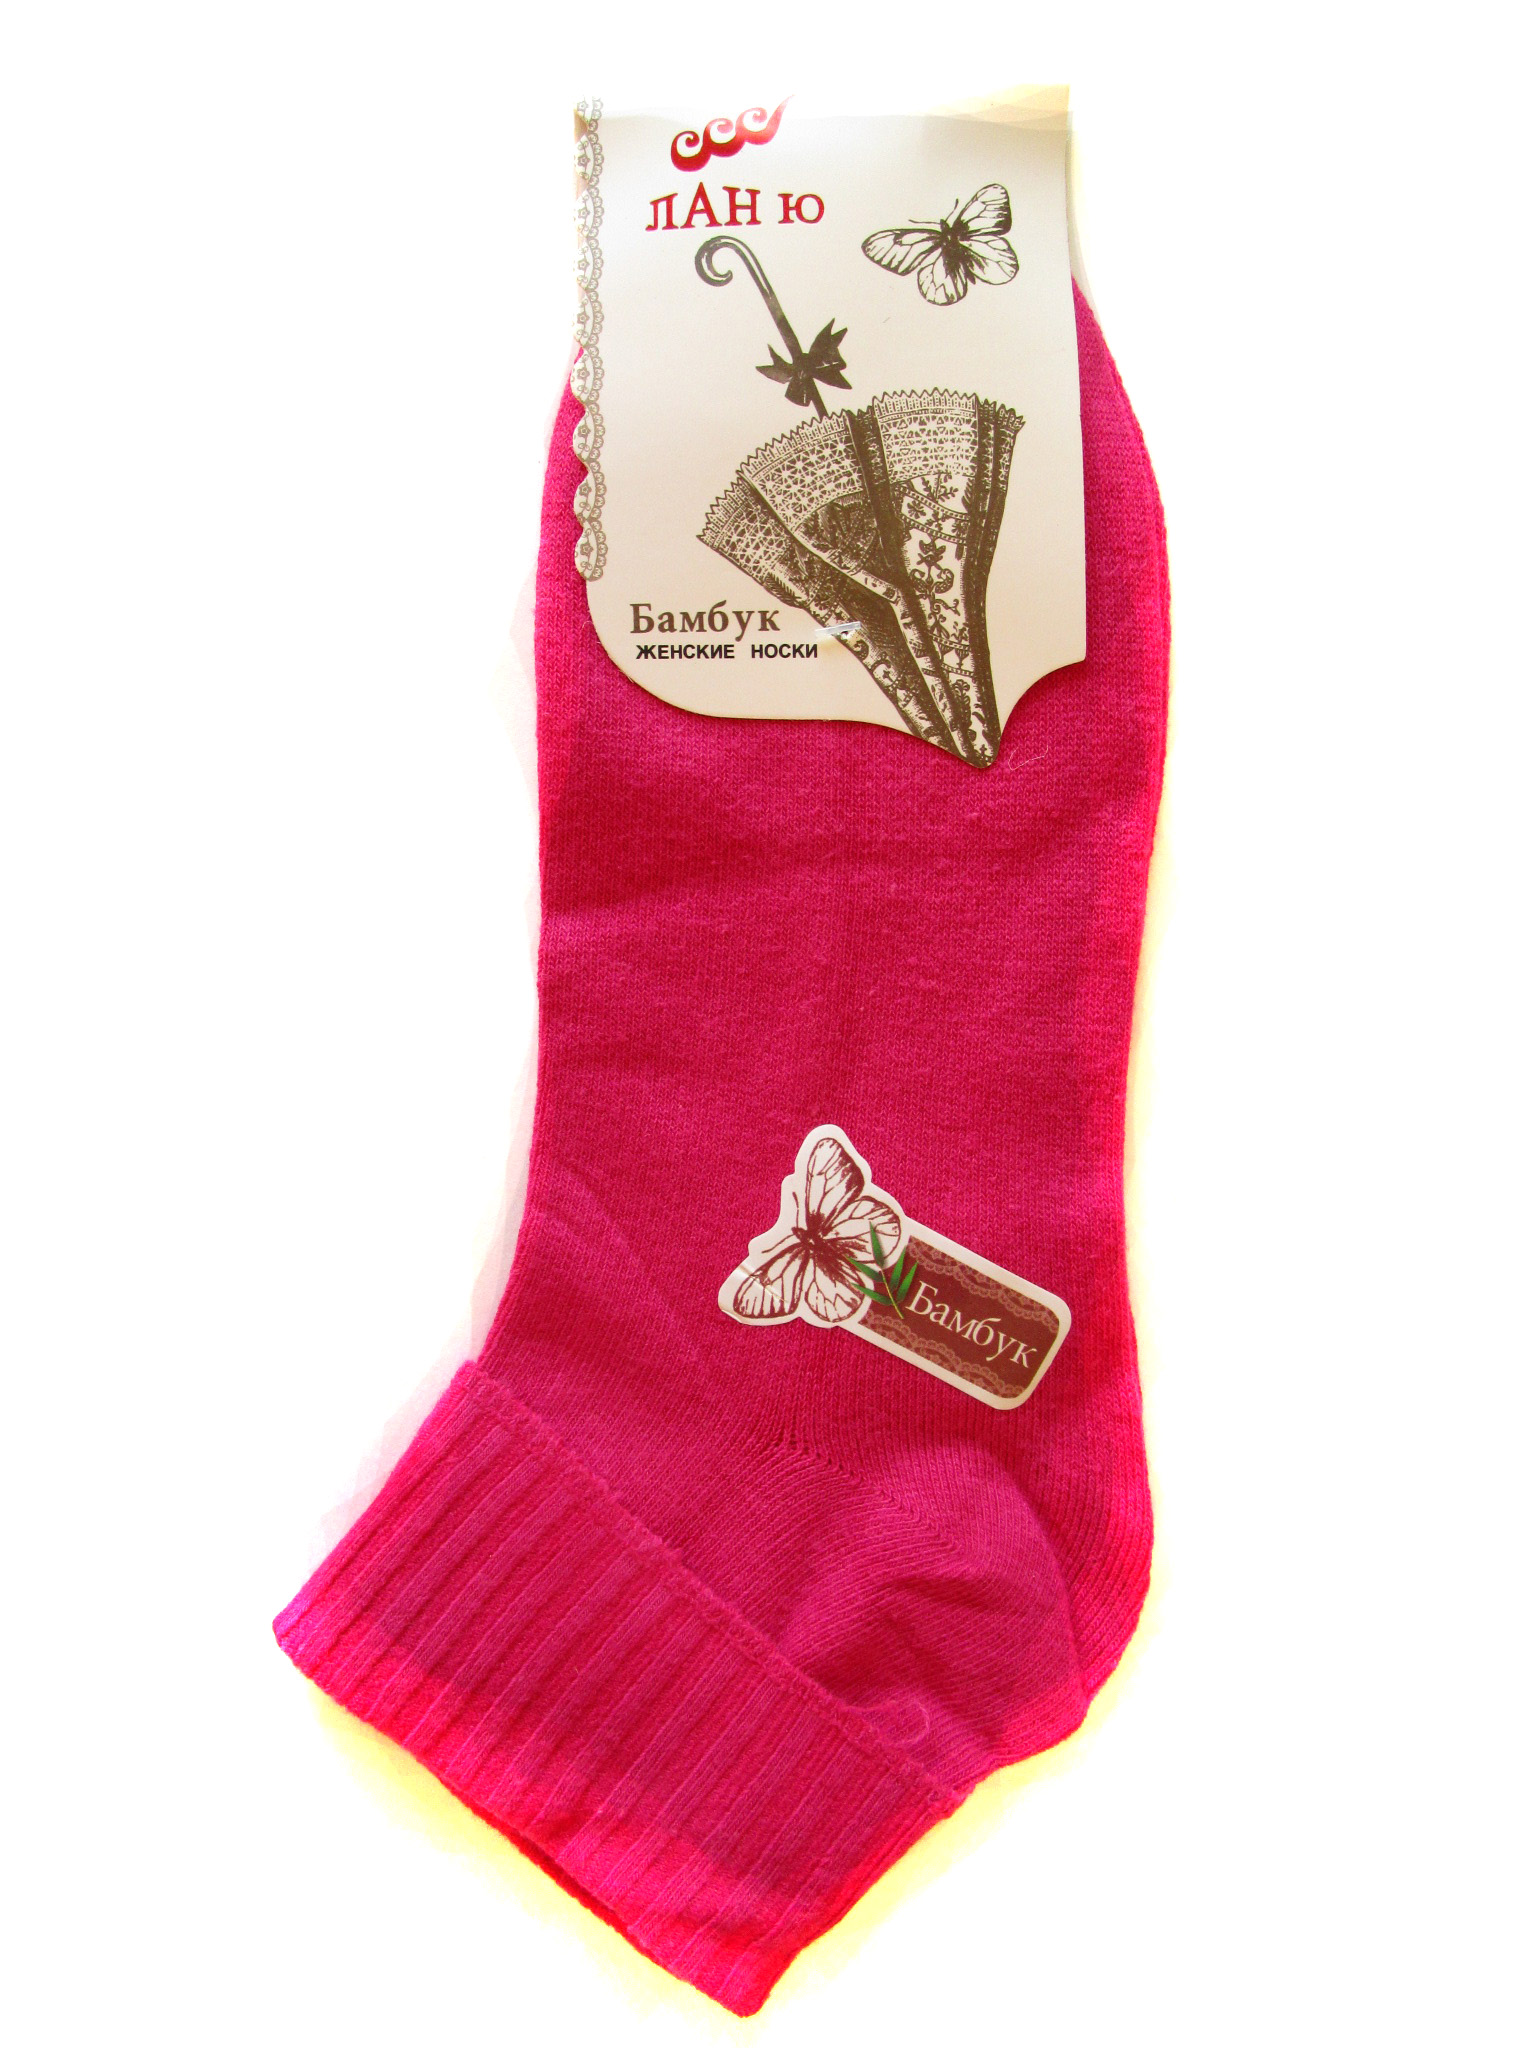 Женские носки "Ланю" (арт.6631)